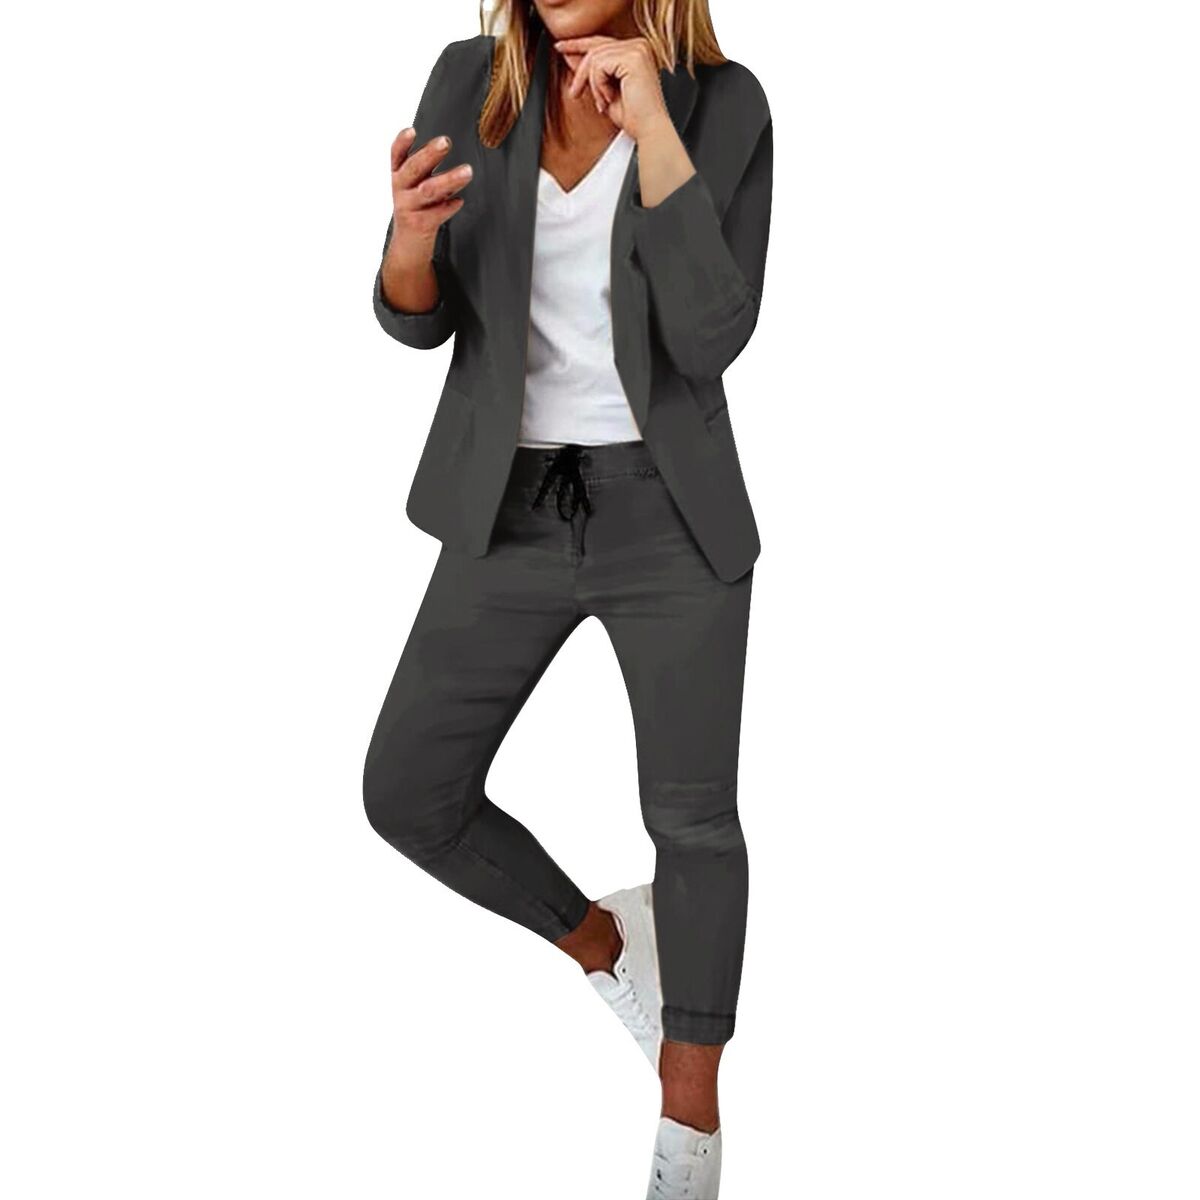  Women's Two Piece Lapels Suit Set Office Business Long